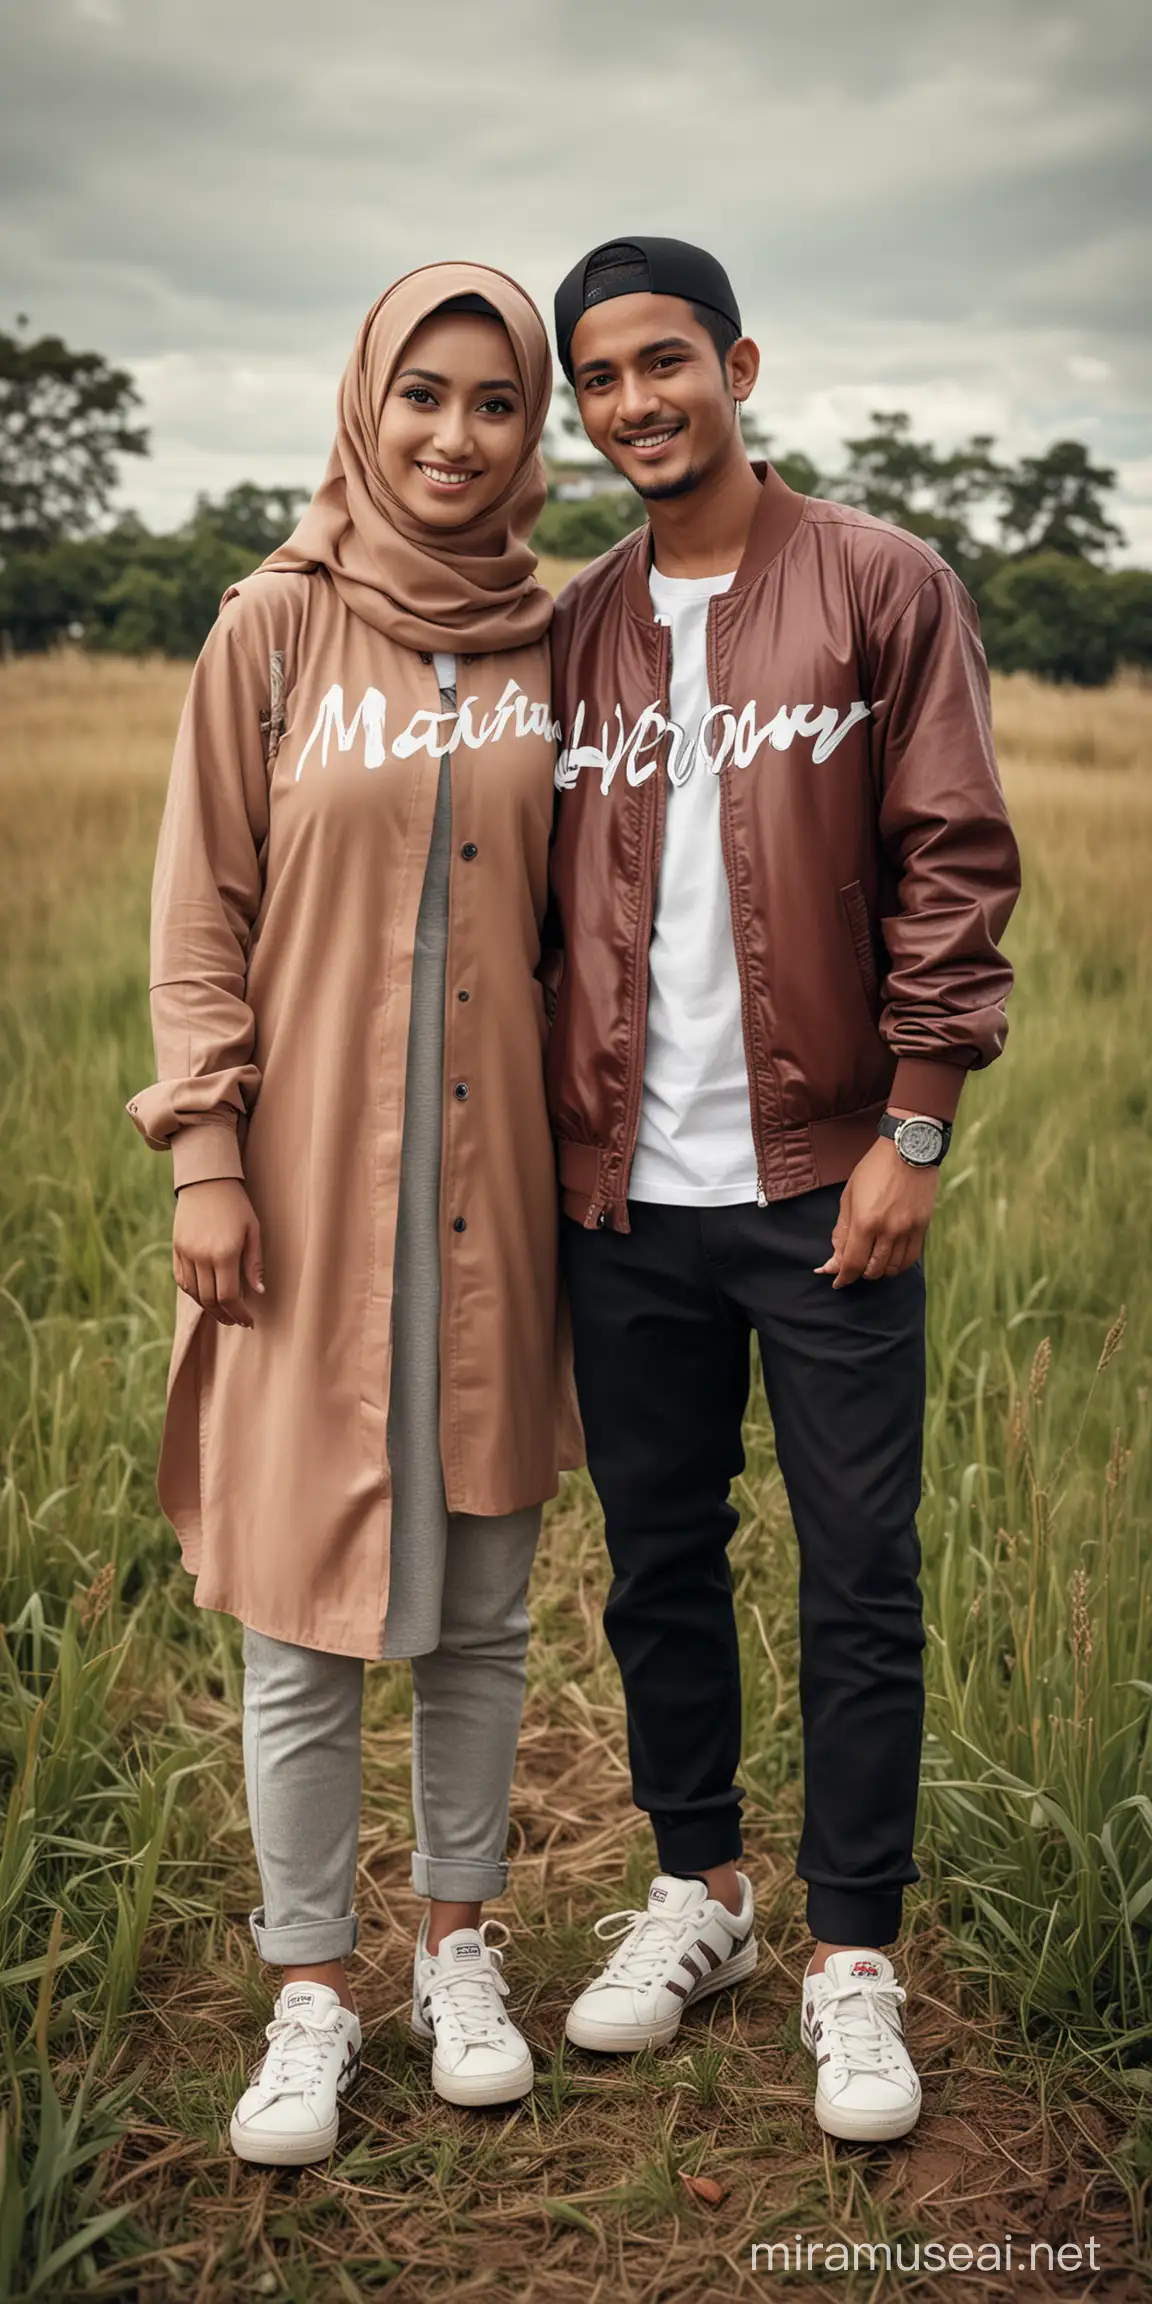 foto ultra Realistis dari pasangan indonesia suami dan istri ( berhijab ) berumur 25 tahun mengenakan jaket Casual bertulisan " MARRON ", sepatu kets, berdiri dengan gaya mesra, di padang rumput, Efek dramatis, karikatur yang sangat detail, foto yang sangat realistis.